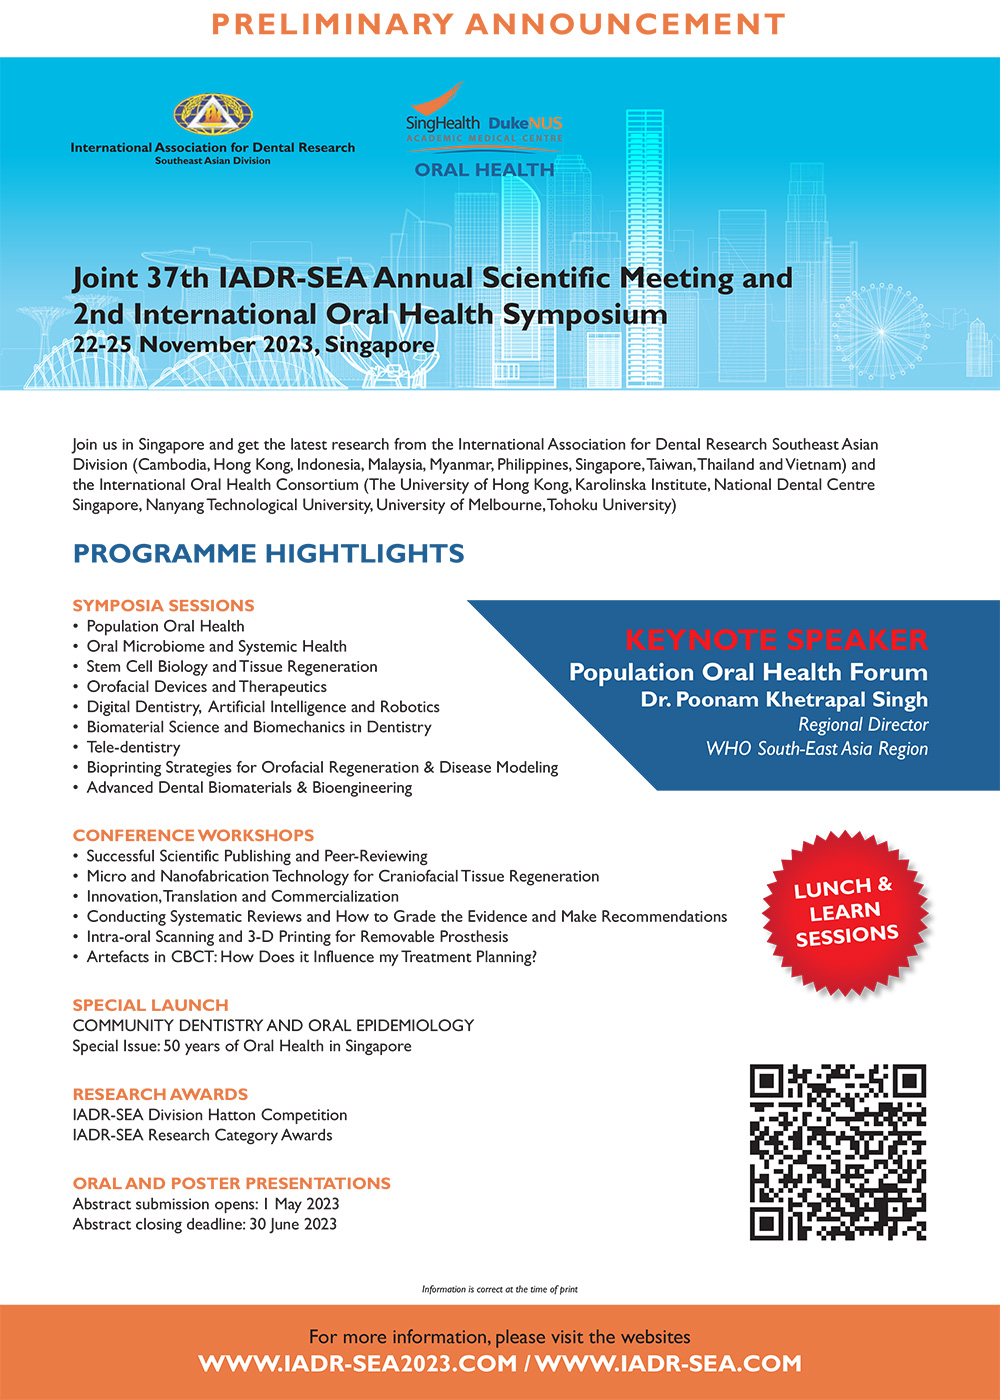 IADR-SEA Annual meeting